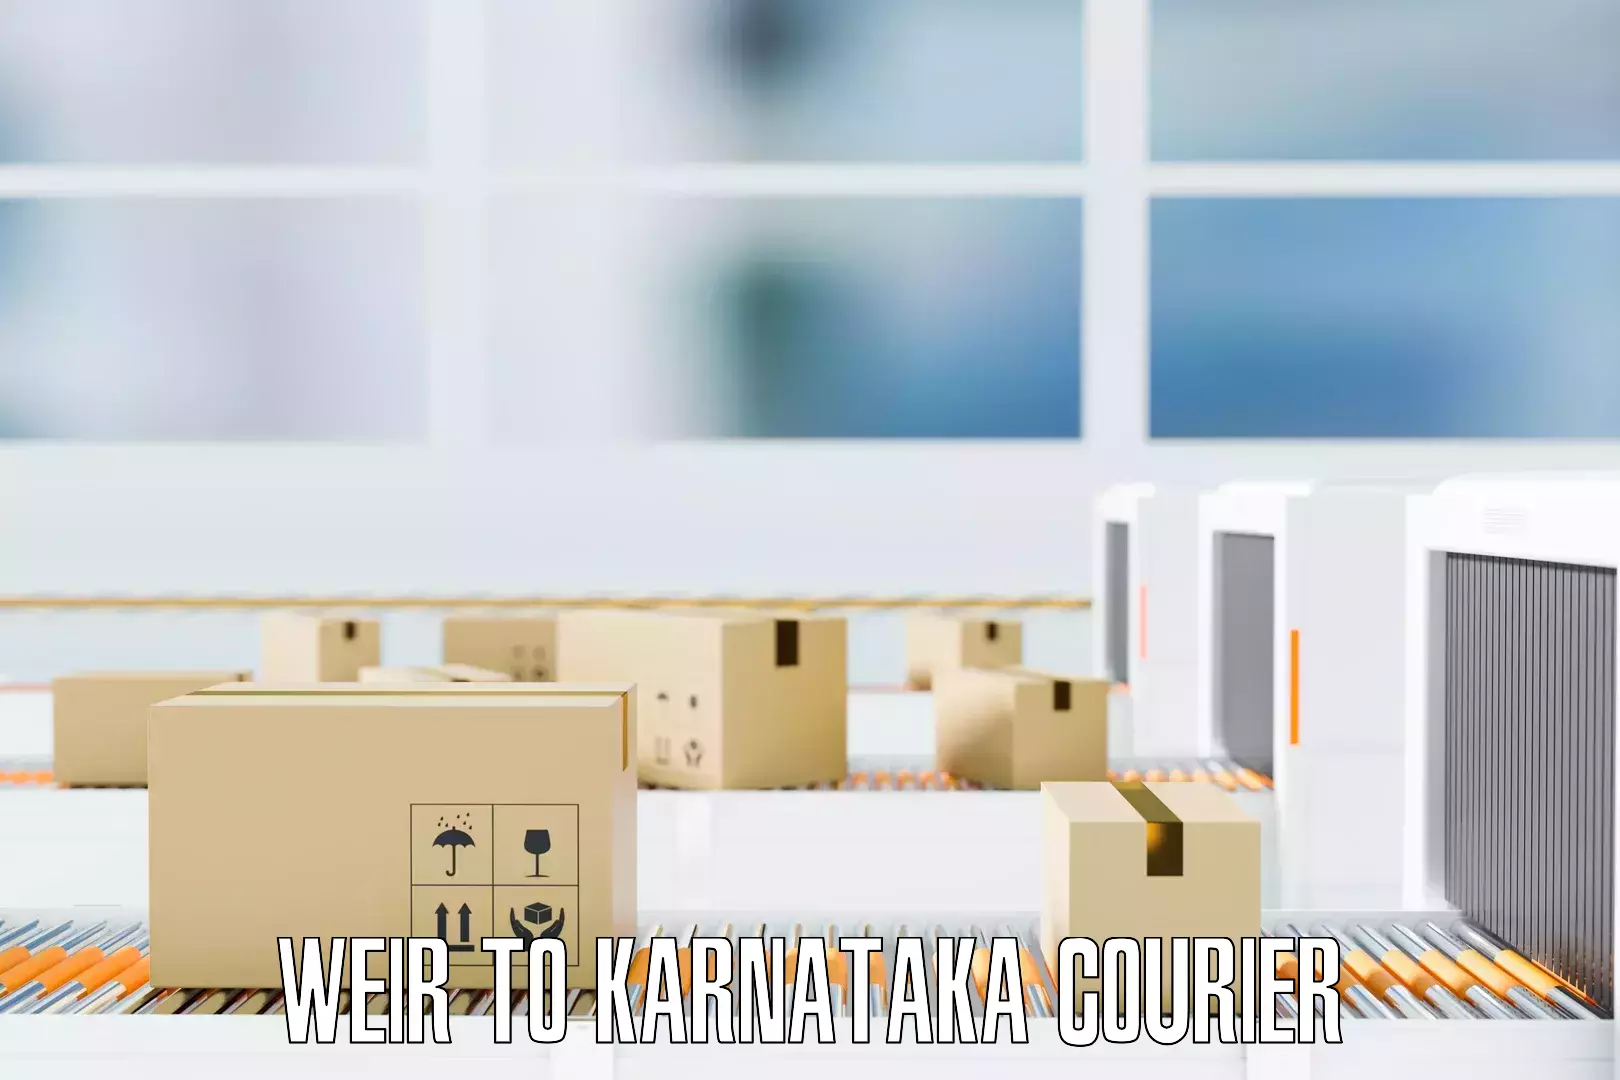 Furniture transport experts Weir to Karnataka